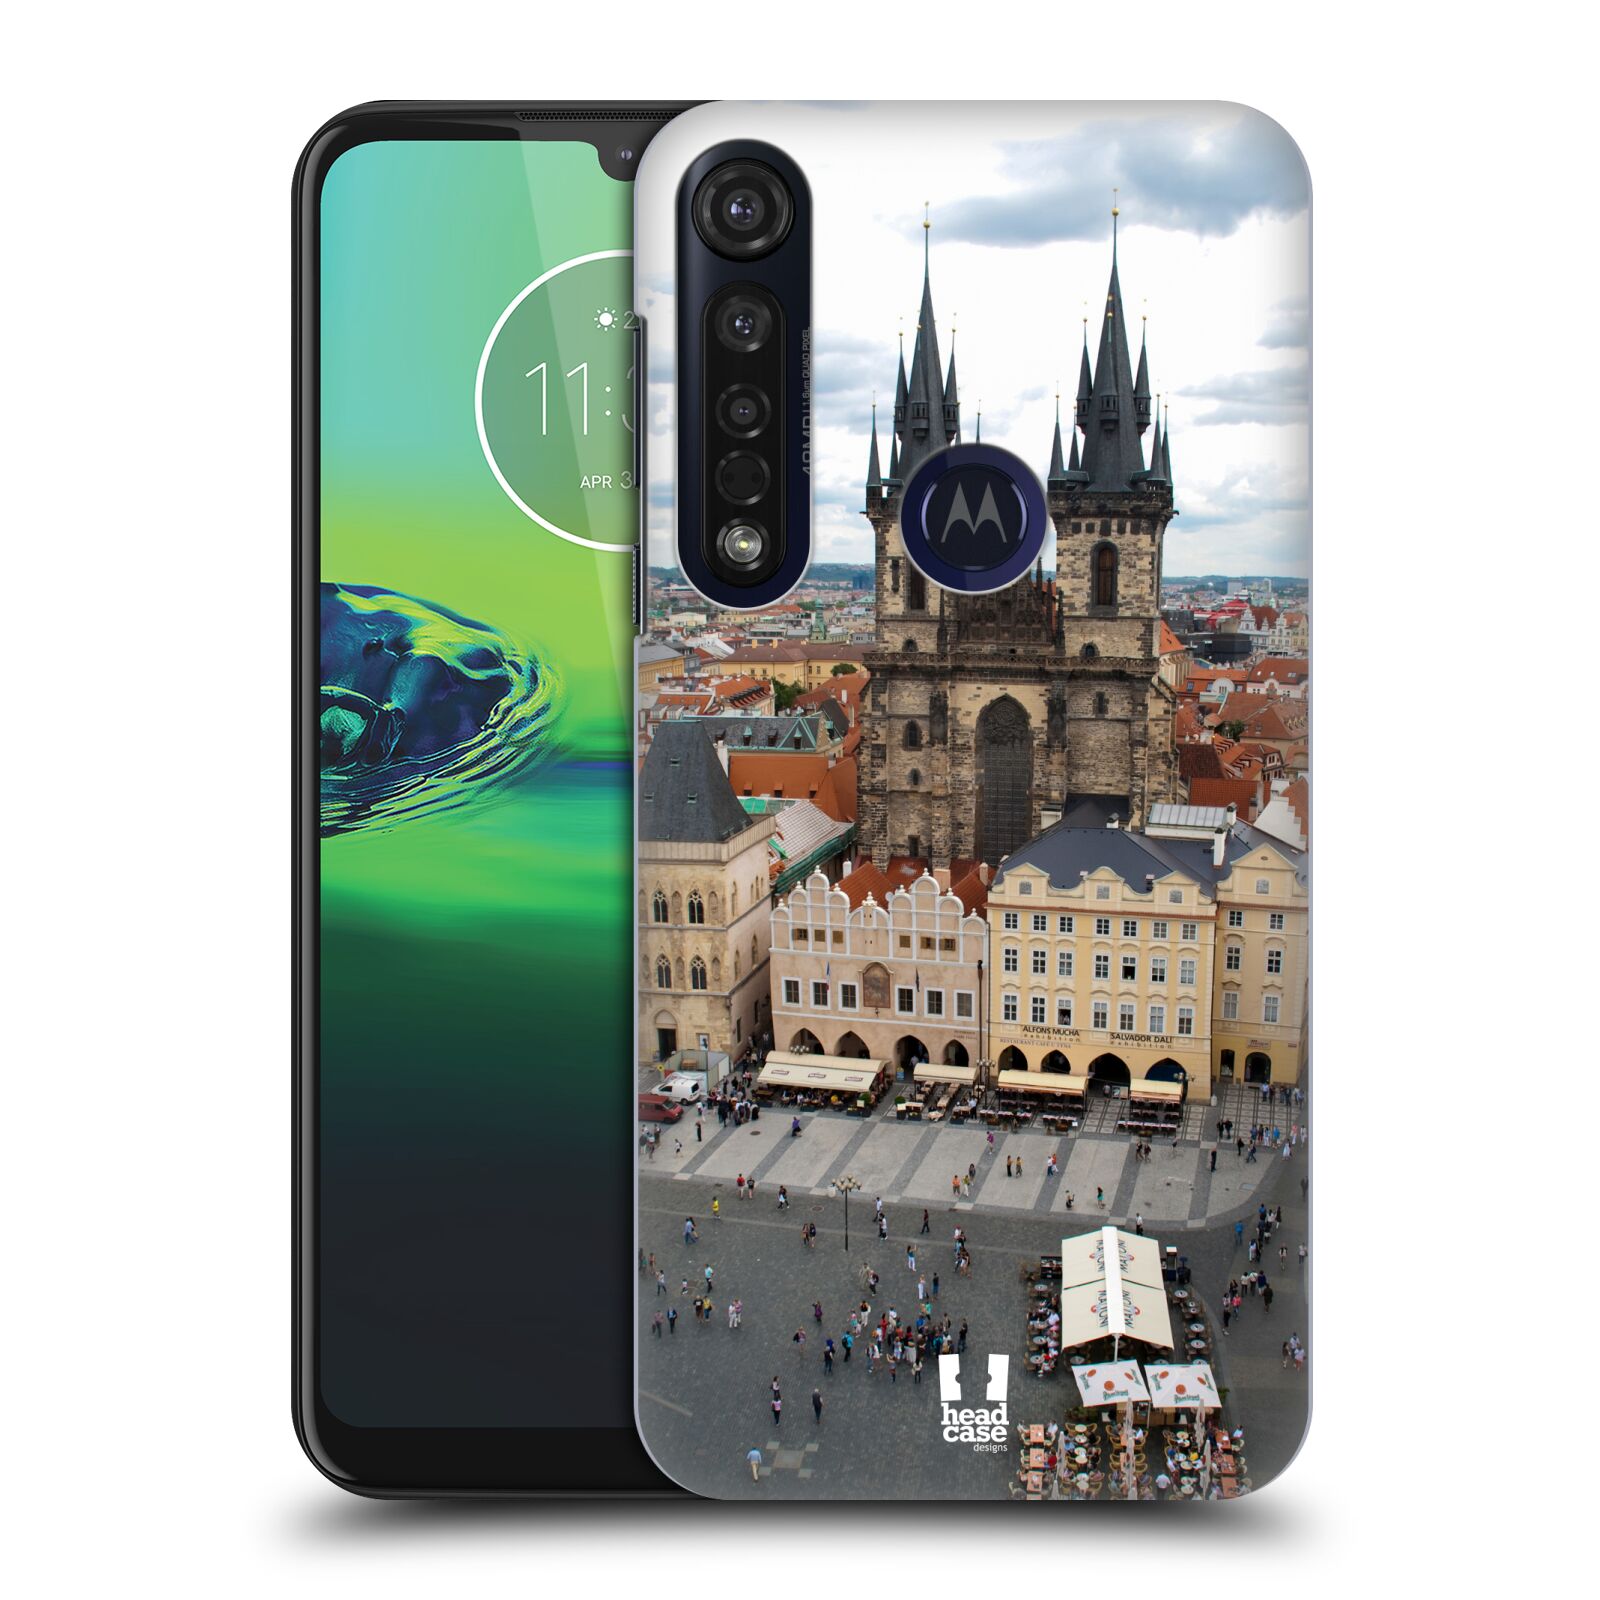 Pouzdro na mobil Motorola Moto G8 PLUS - HEAD CASE - vzor Města foto náměstí ČESKÁ REPUBLIKA, PRAHA, STAROMĚSTSKÉ NÁMĚSTÍ